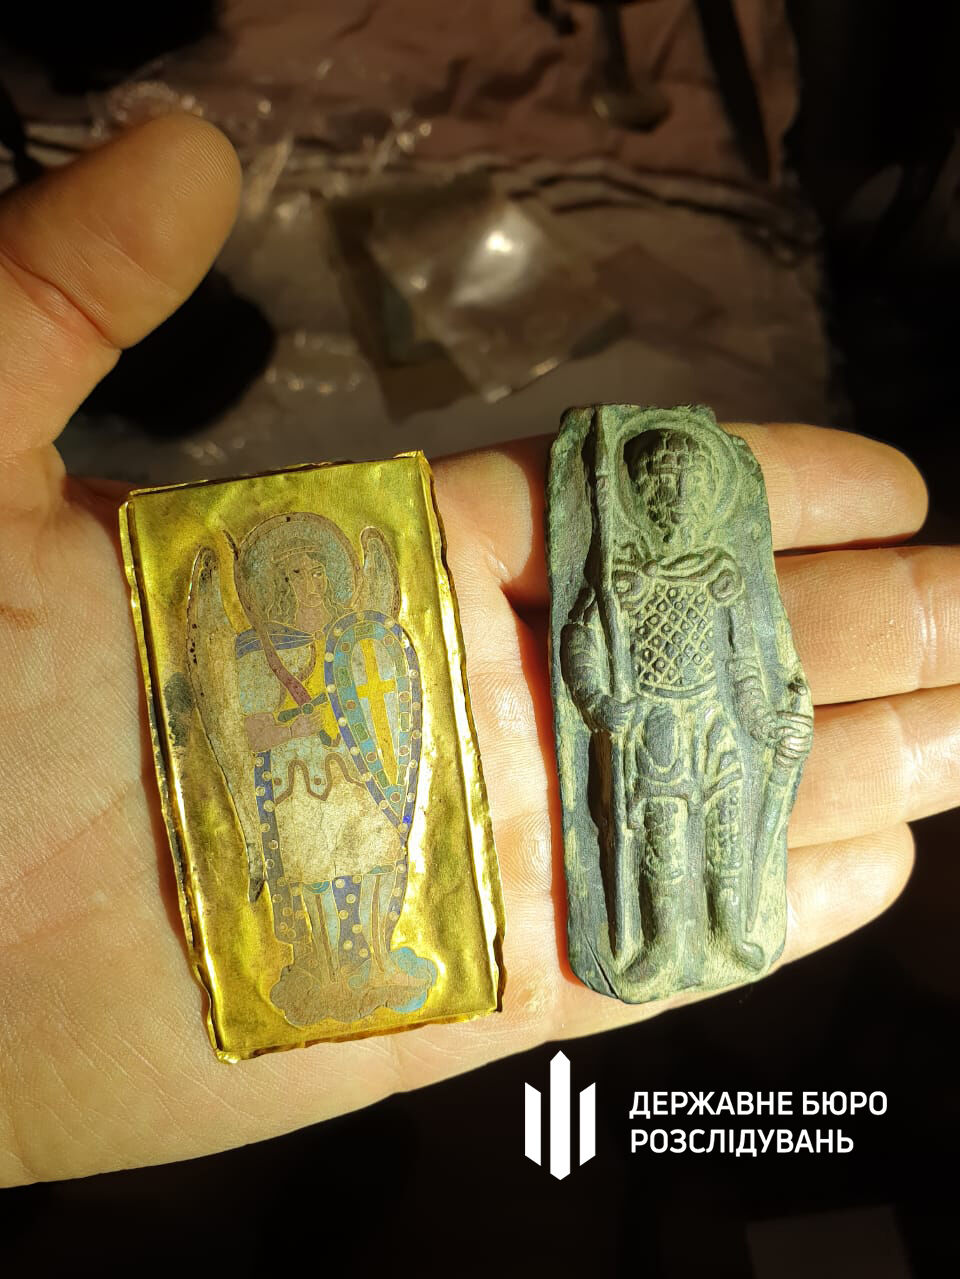 У экс-нардепа Горбатова нашли еще одну коллекцию древних украинских артефактов. Фото 12